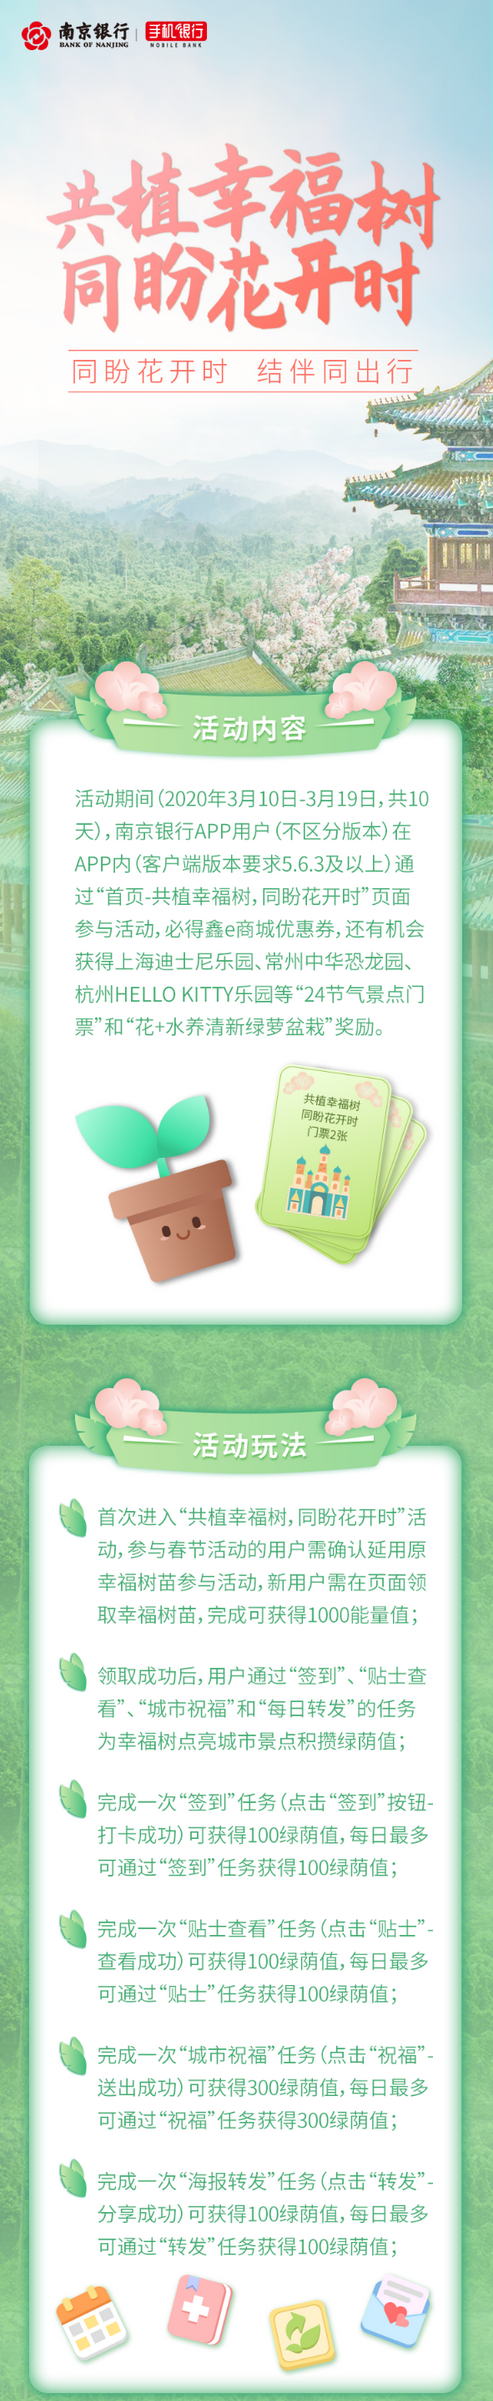 南京银行卡用户绿荫值达到6000时，有机会赢门票两张